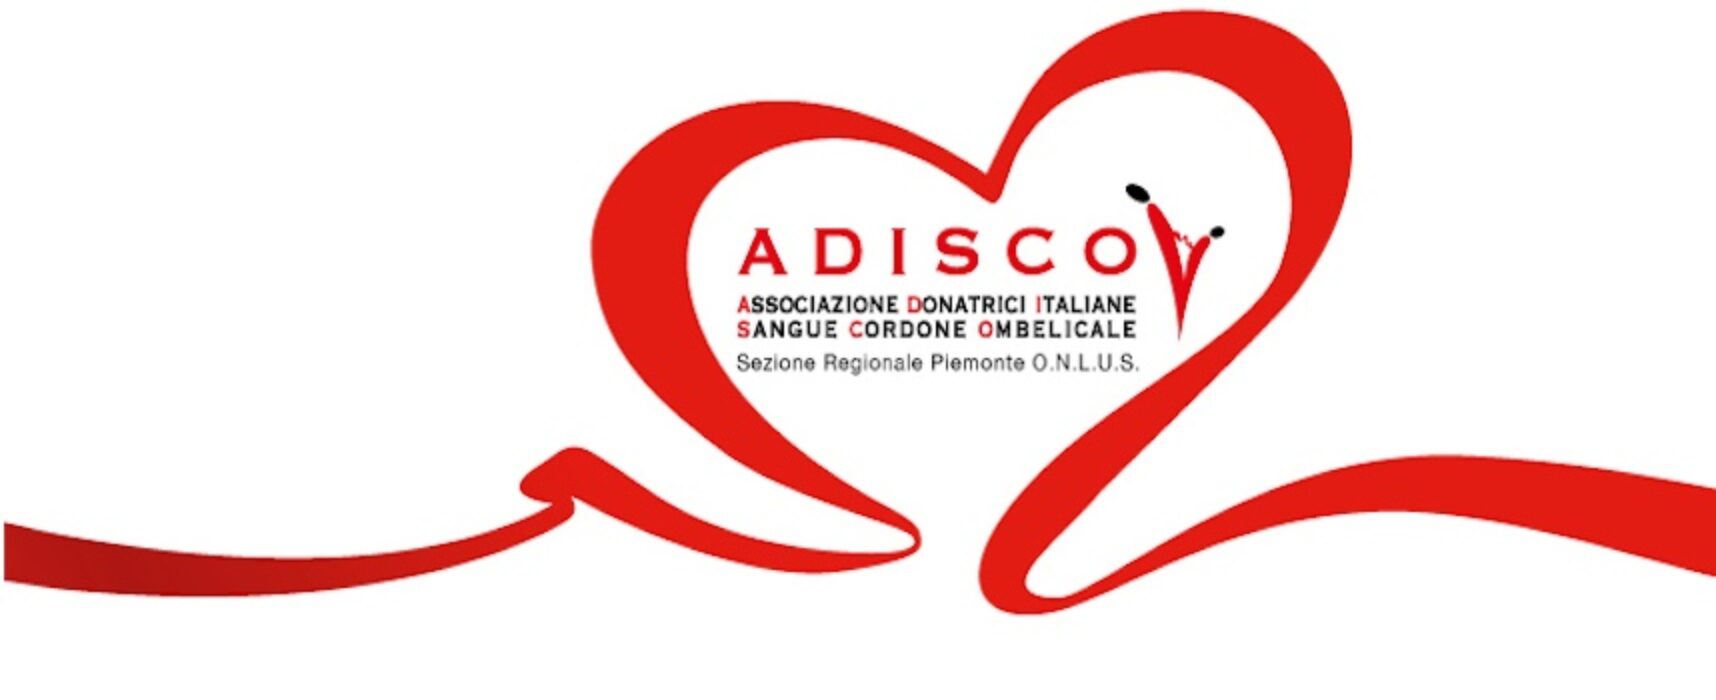 Adisco al Liceo “Da Vinci”: donazione del cordone ombelicale tra ricerca scientifica e solidarietà